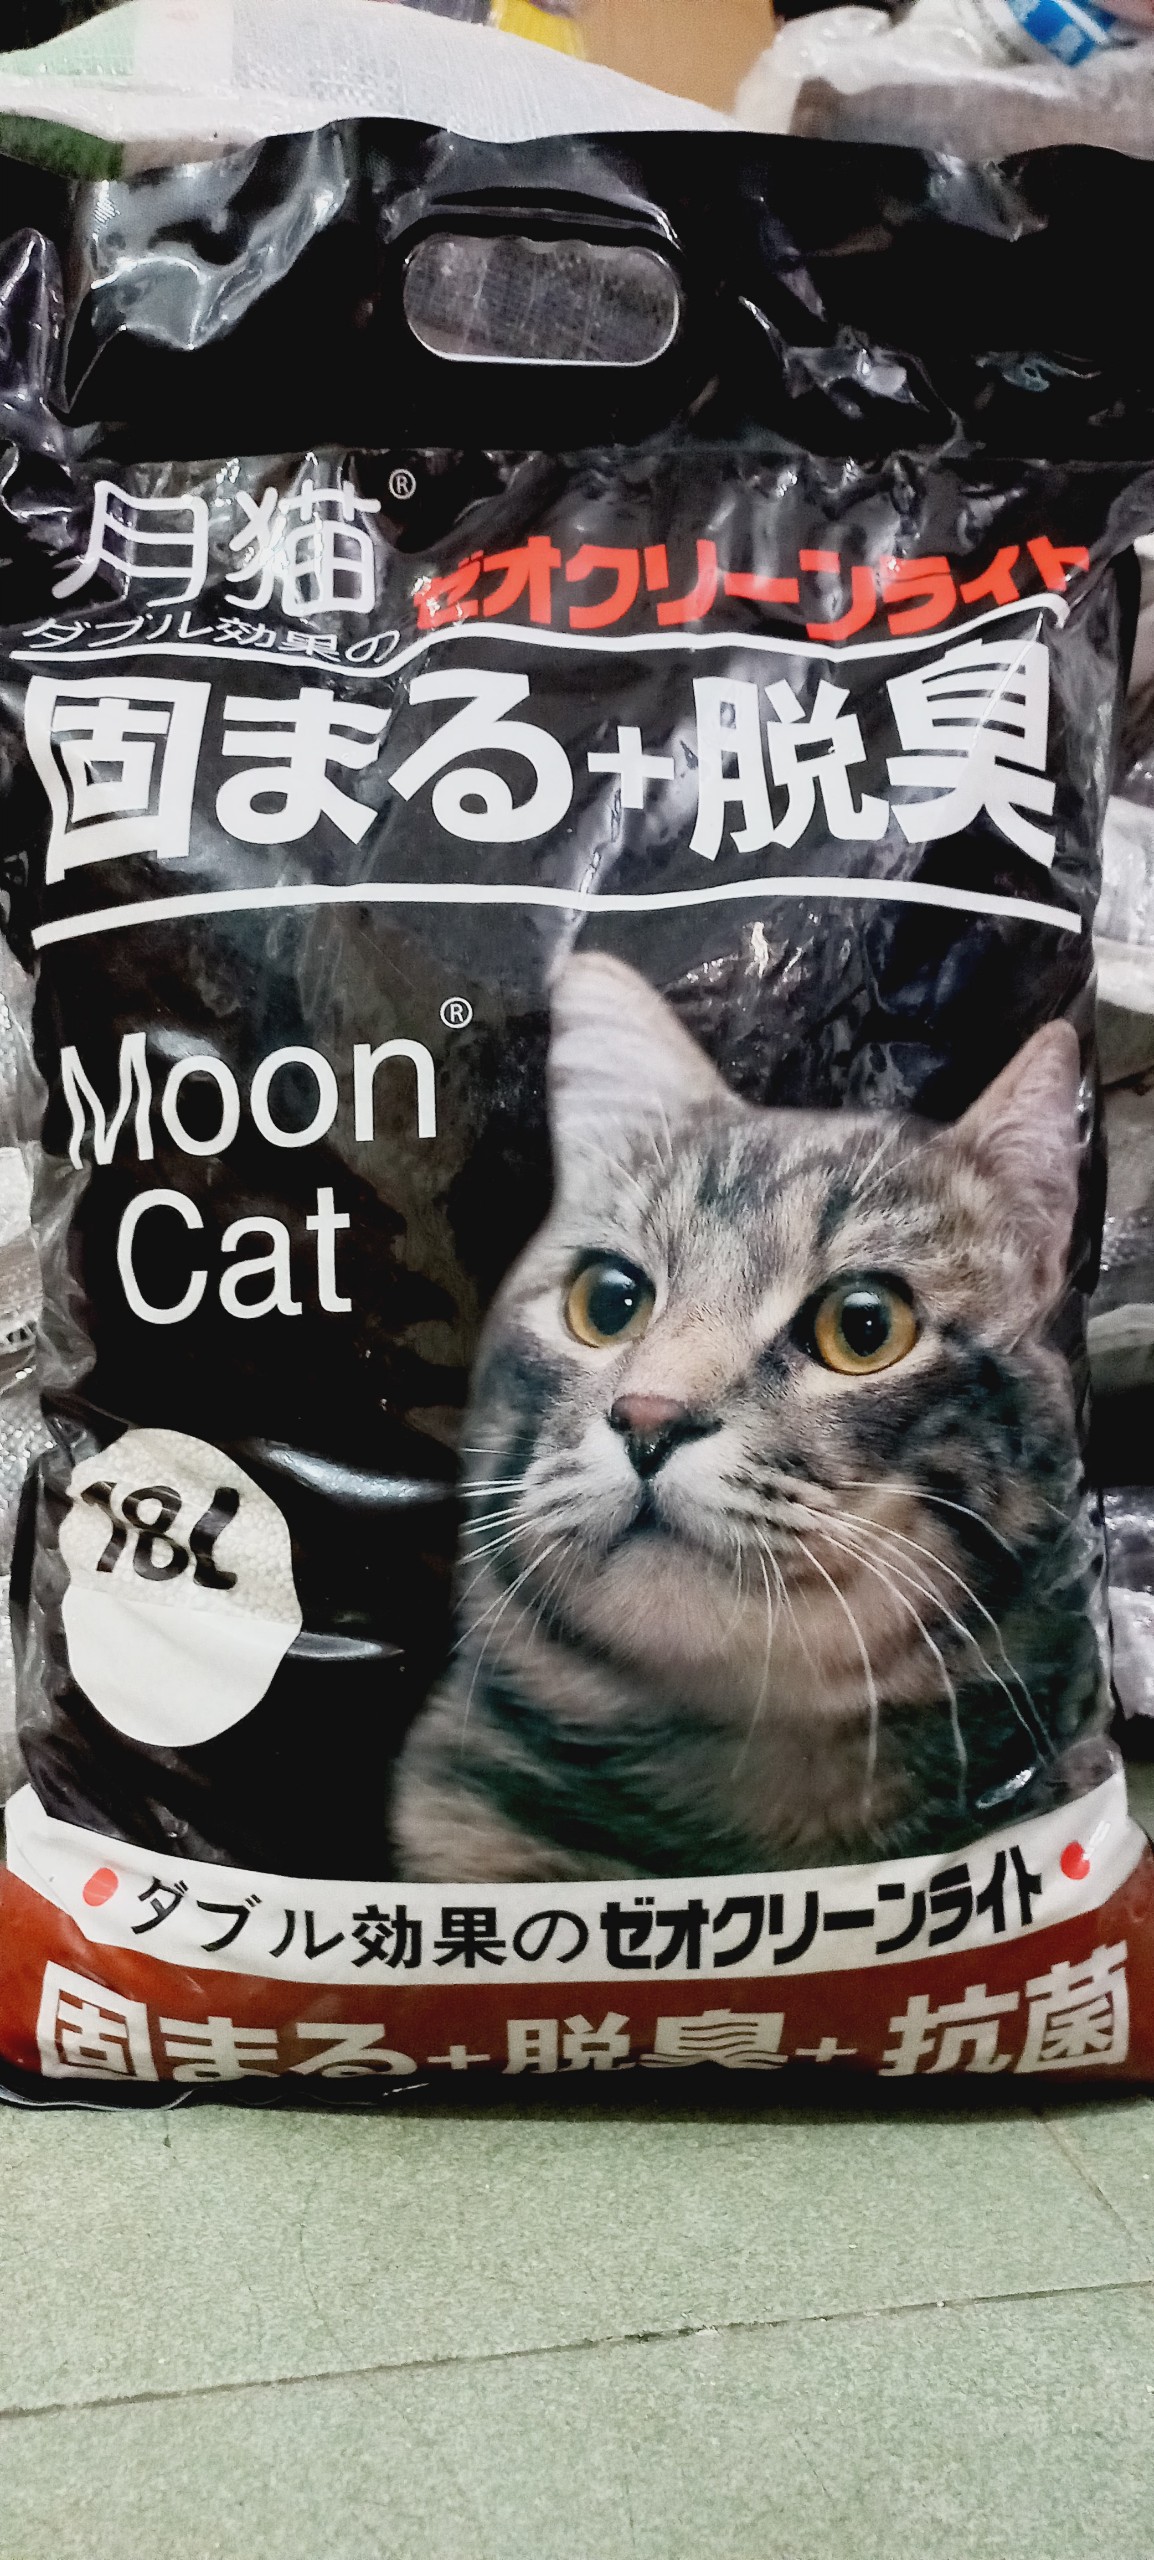 Cát mèo, Cát vệ sinh cho mèo Cát Nhật Đen Moon Cat 16L, 18L